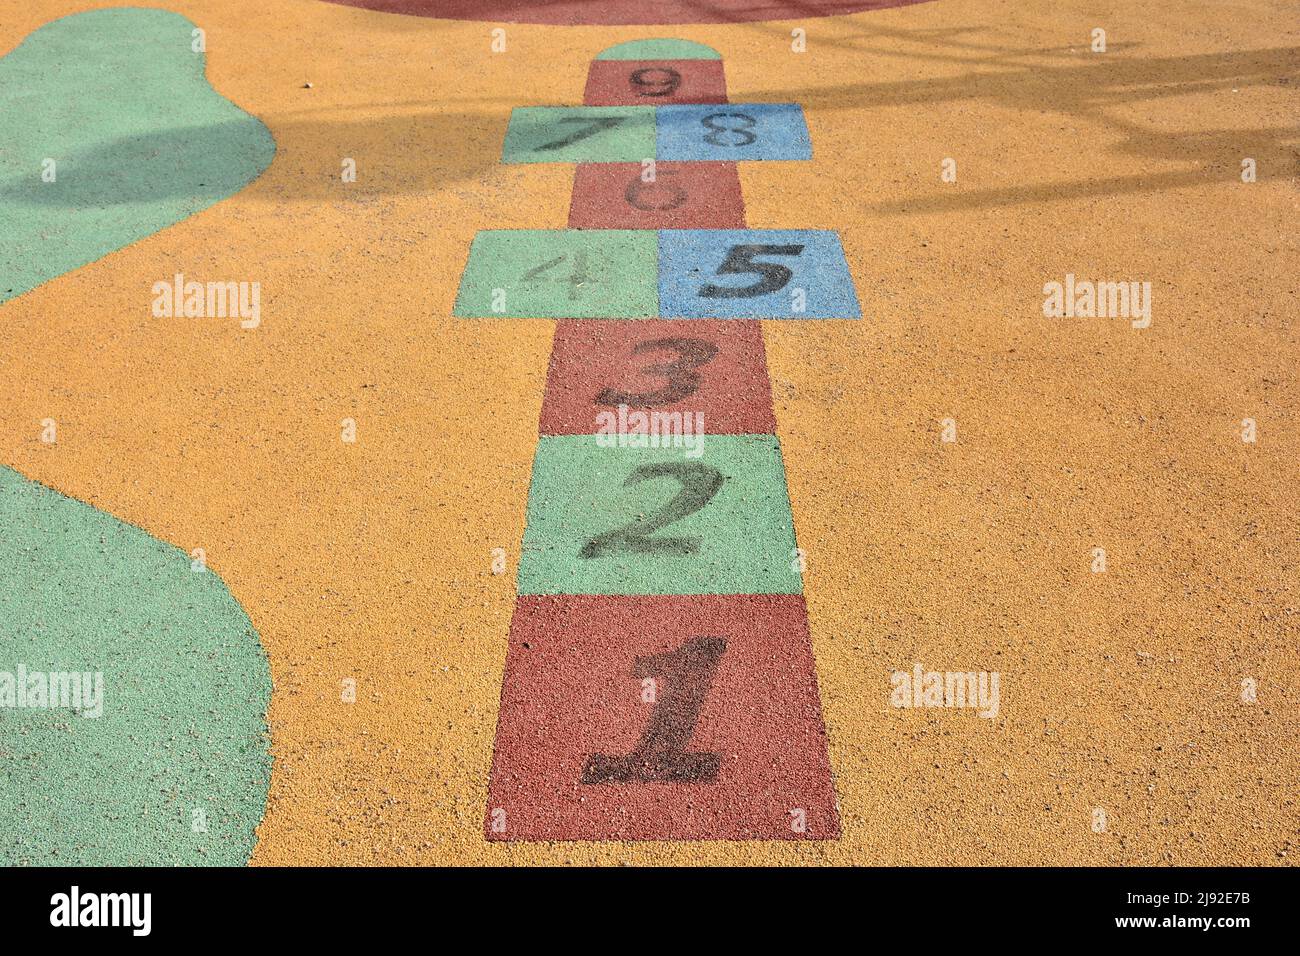 Rayuela de colores hecha en el suelo de un parque infantil Stock Photo